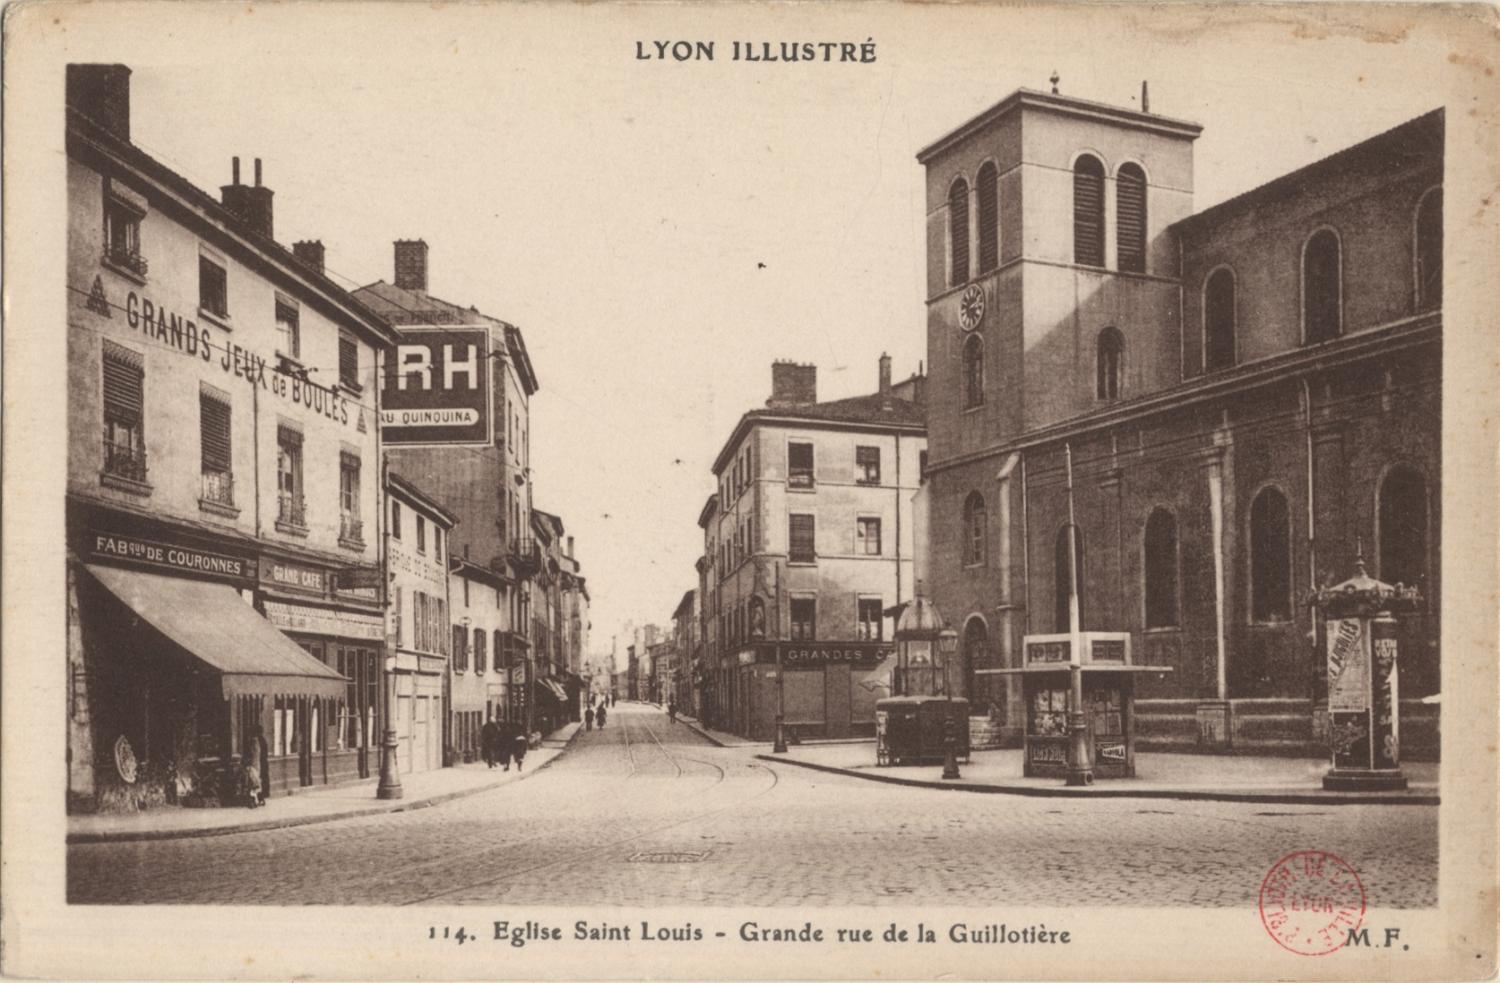 Lyon illustré : Eglise Saint-Louis ; Grande rue de la Guillotière